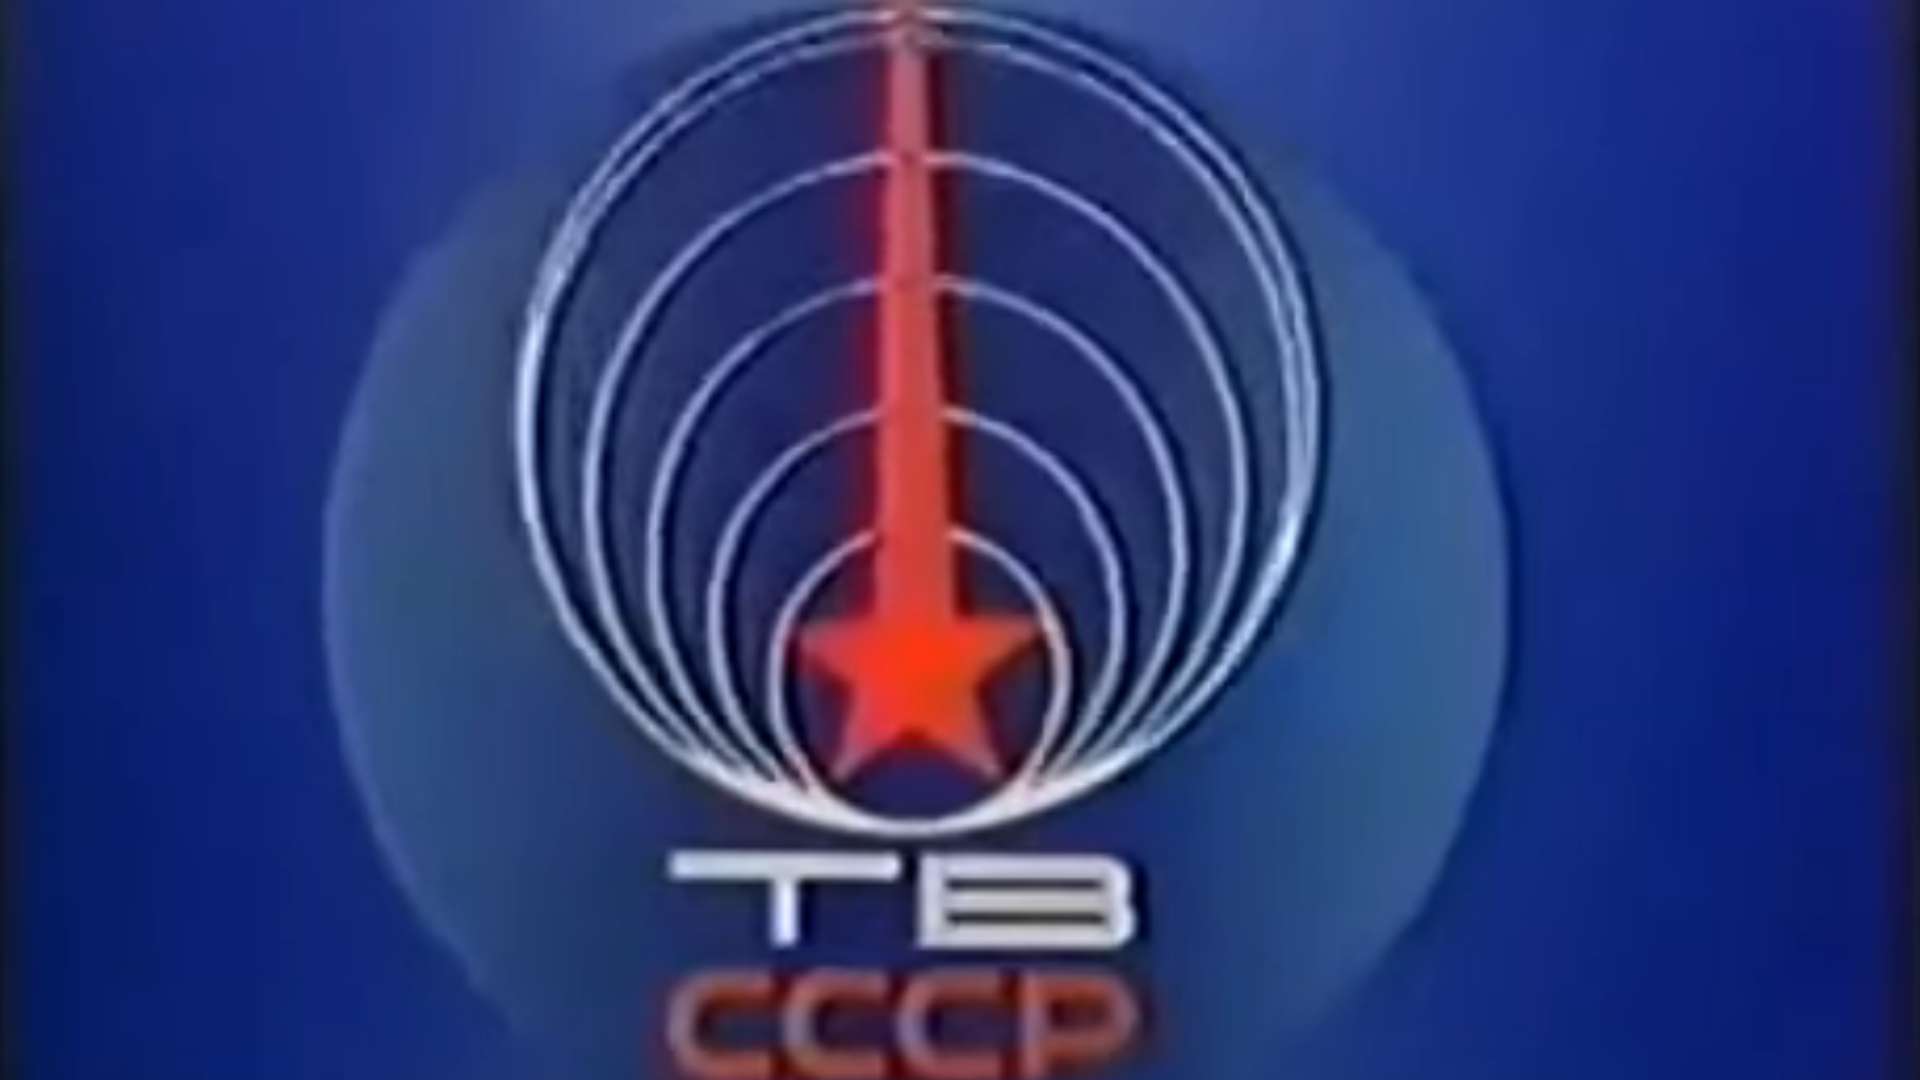 TB CCCP